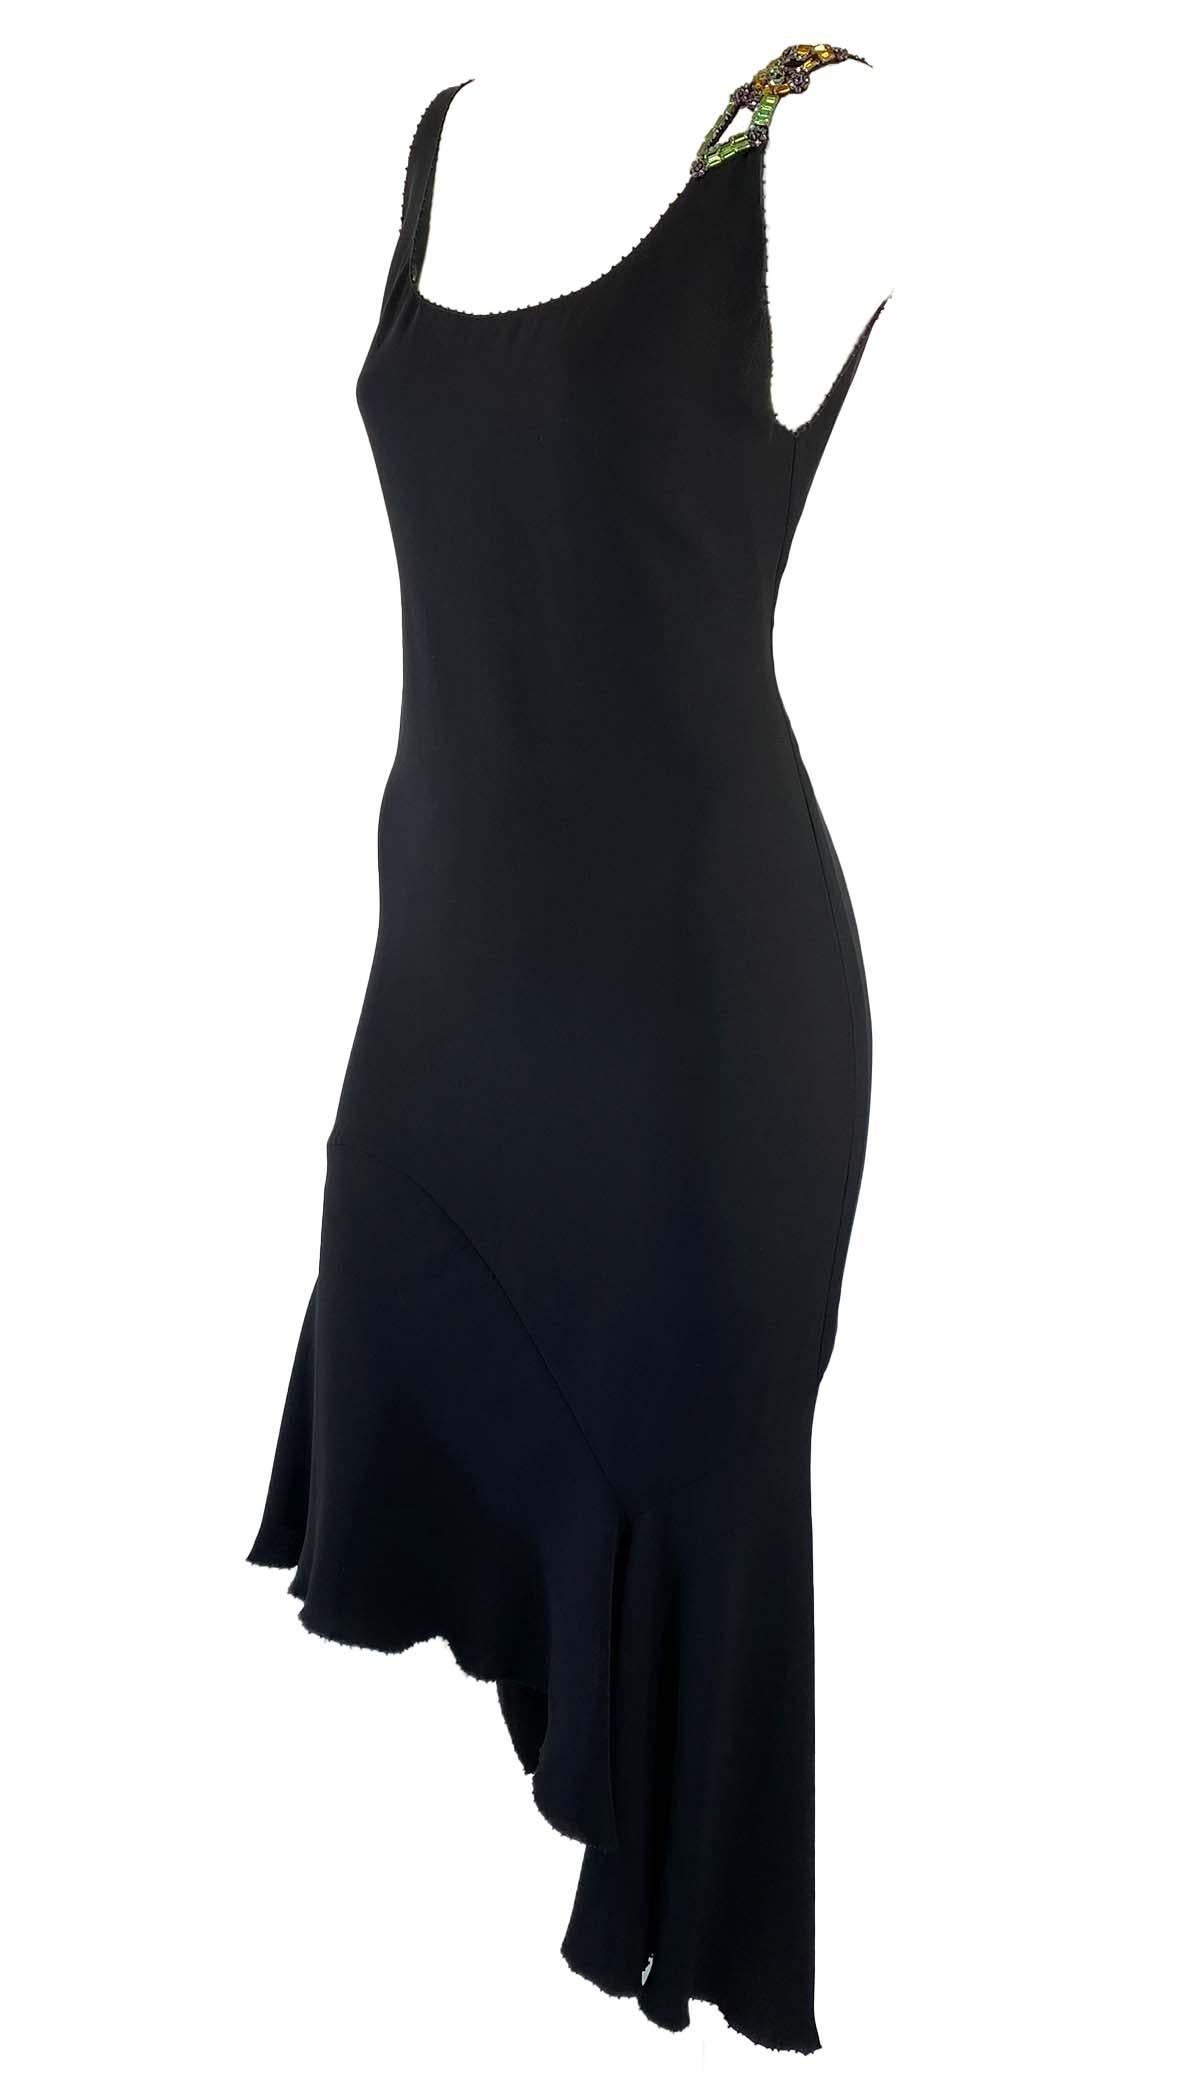 Collectional présente une petite robe noire embellie, conçue par Gianni Versace pour sa collection printemps/été 1997. Cette pièce rare a été fortement influencée par le défilé de haute couture de la saison et n'est pas apparue sur le défilé de